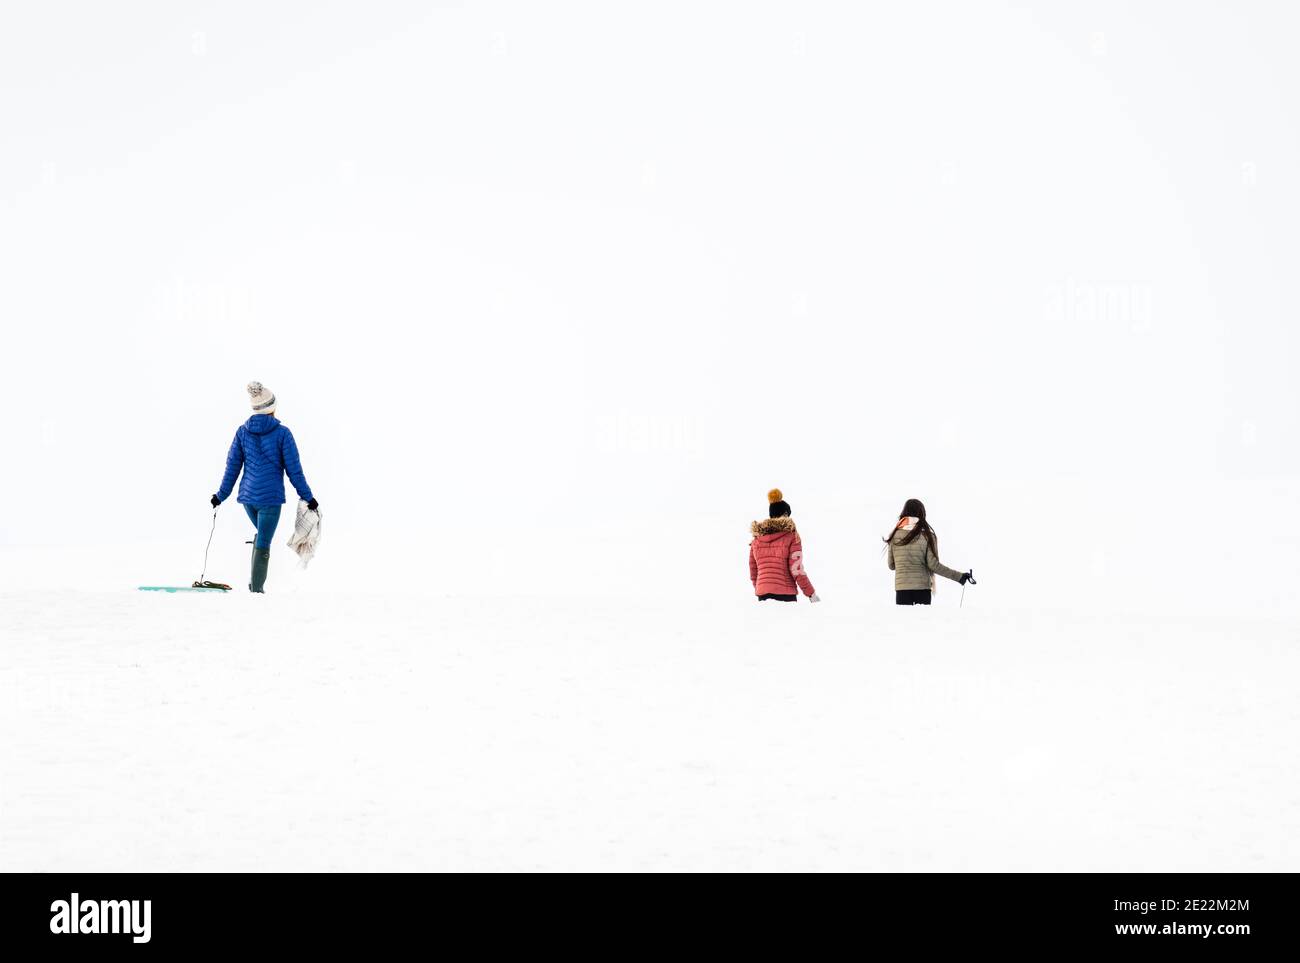 Divertimento invernale all'aperto, attività e esercizio fisico. Famiglie con bambini in slitta nella neve profonda. Foto Stock